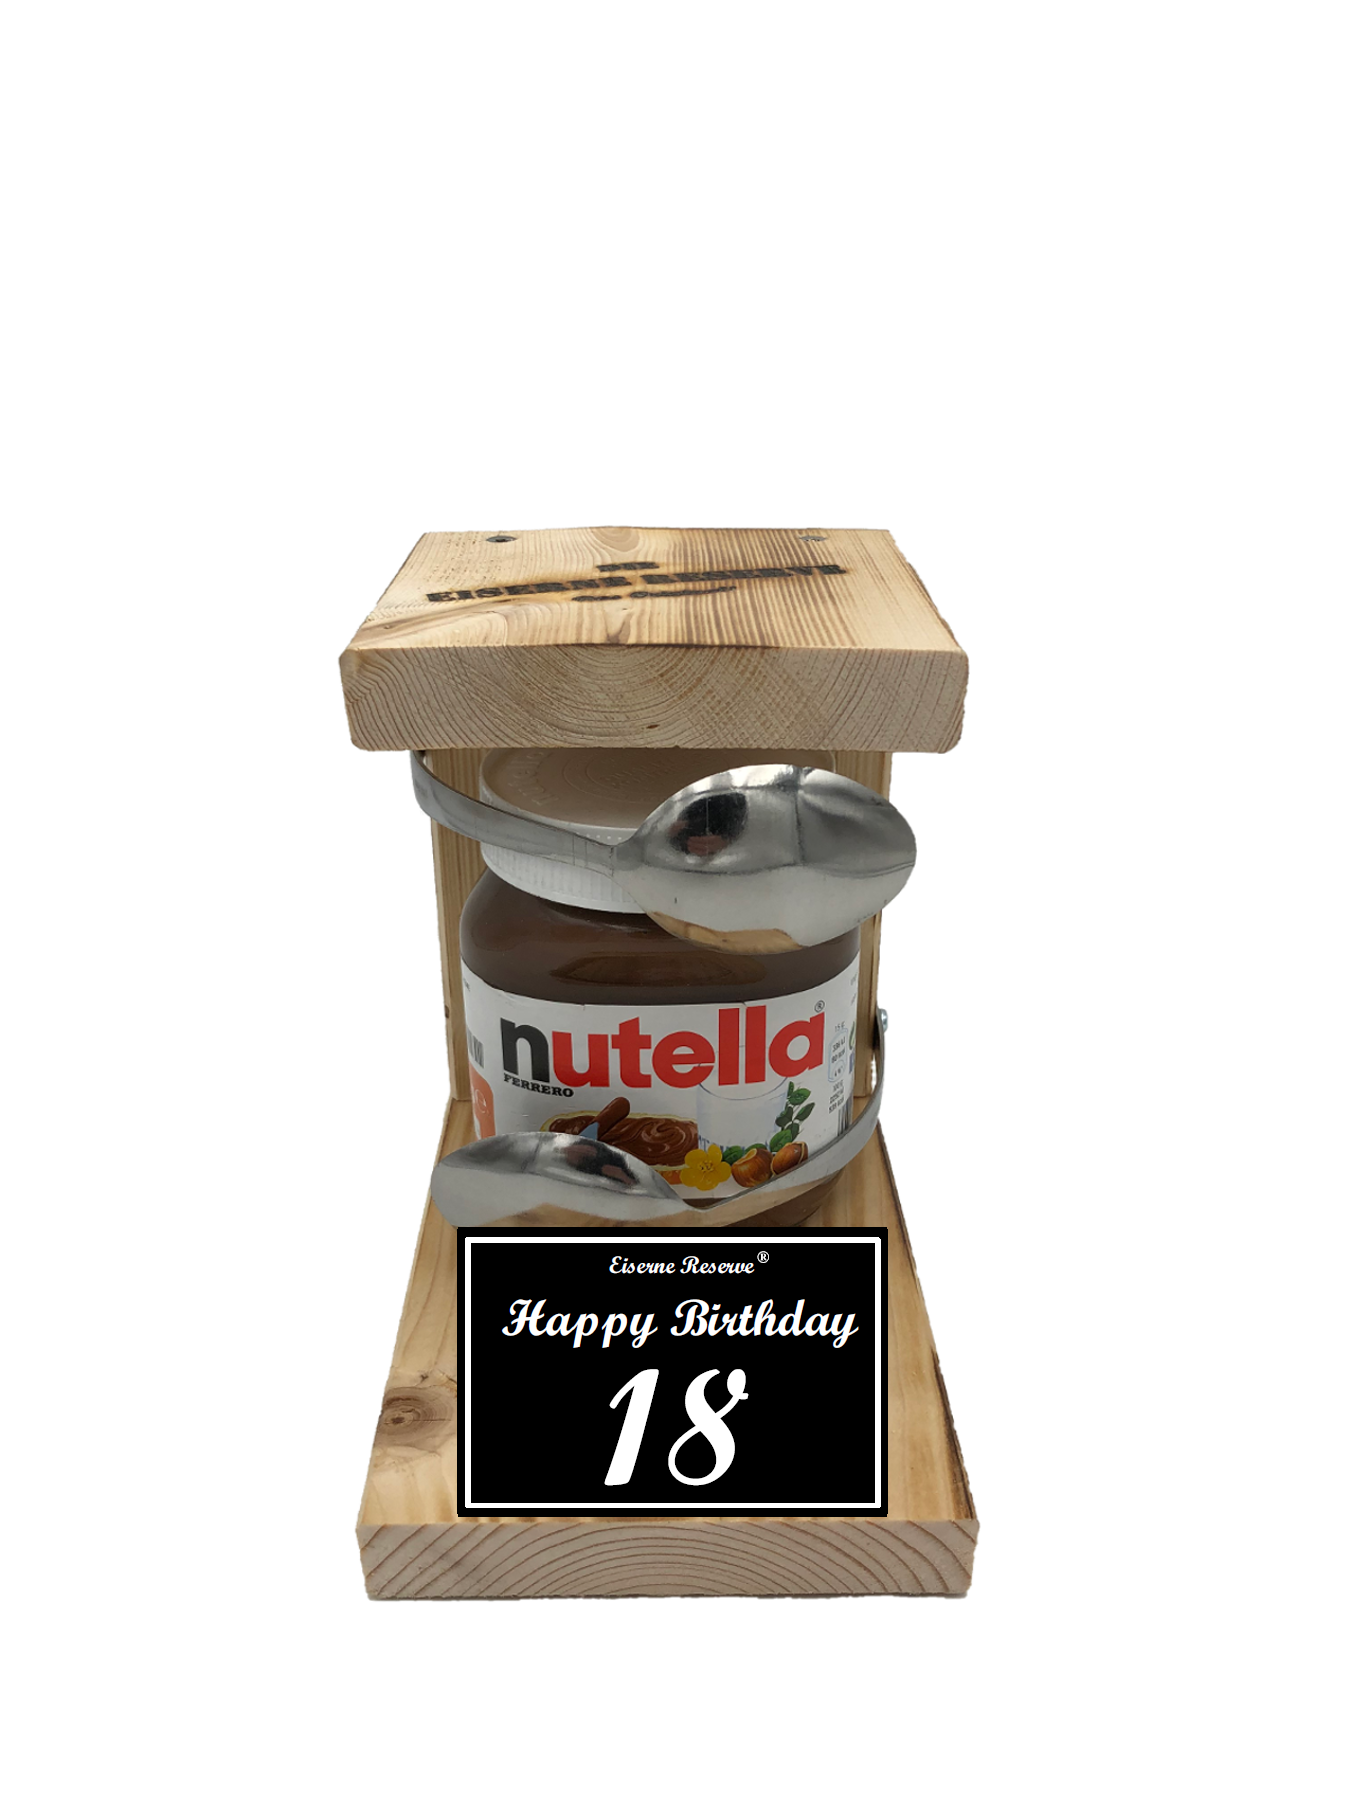 Geschenke Zum 18 Geburtstag Mit Nutella Die Geschenkidee